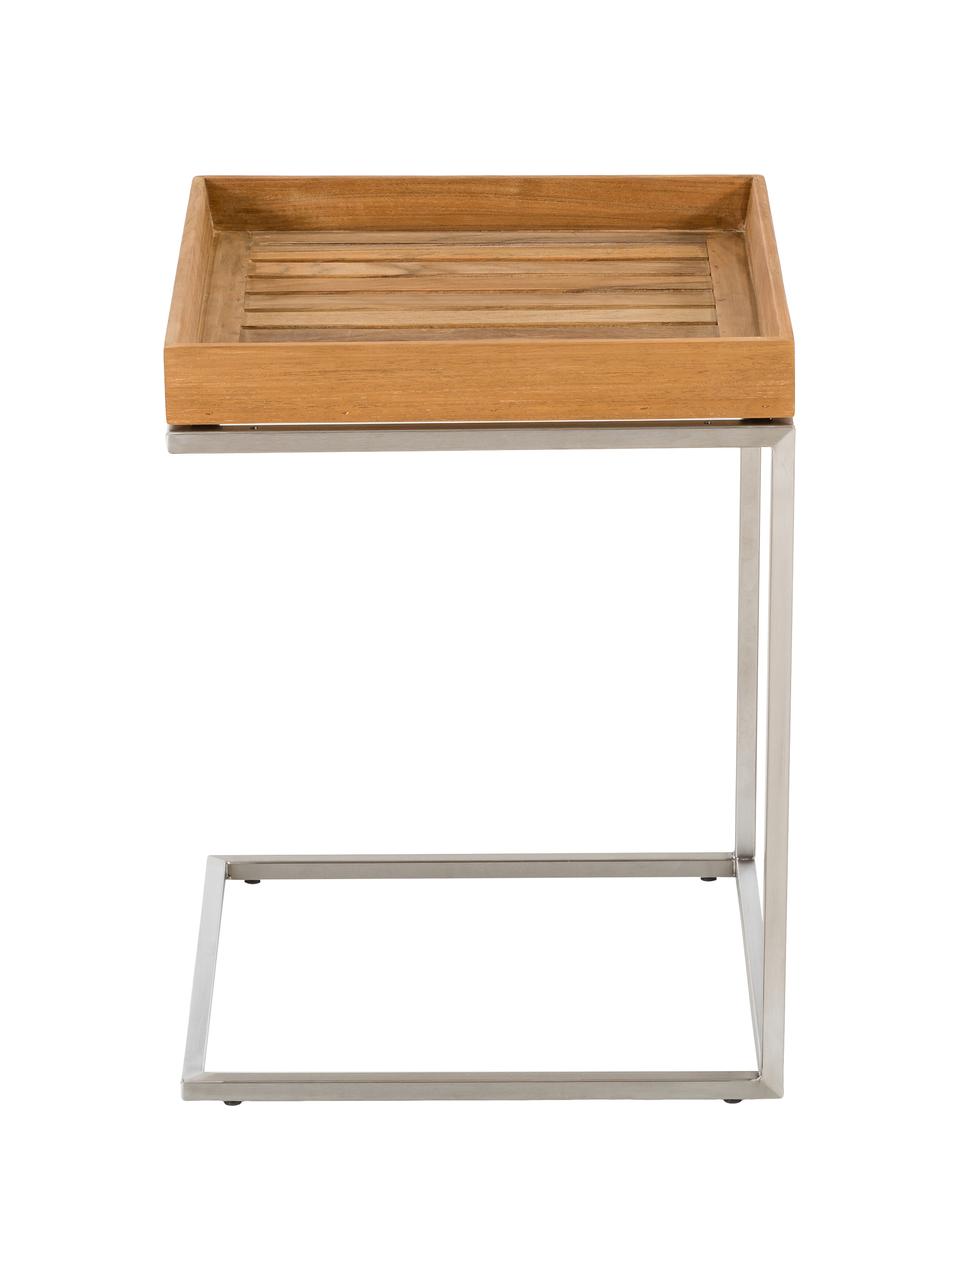 Tavolino-vassoio da balcone in legno di teak Pizzo, Struttura: acciaio inossidabile luci, Legno di teak, acciaio inossidabile, Larg. 40 x Alt. 52 cm